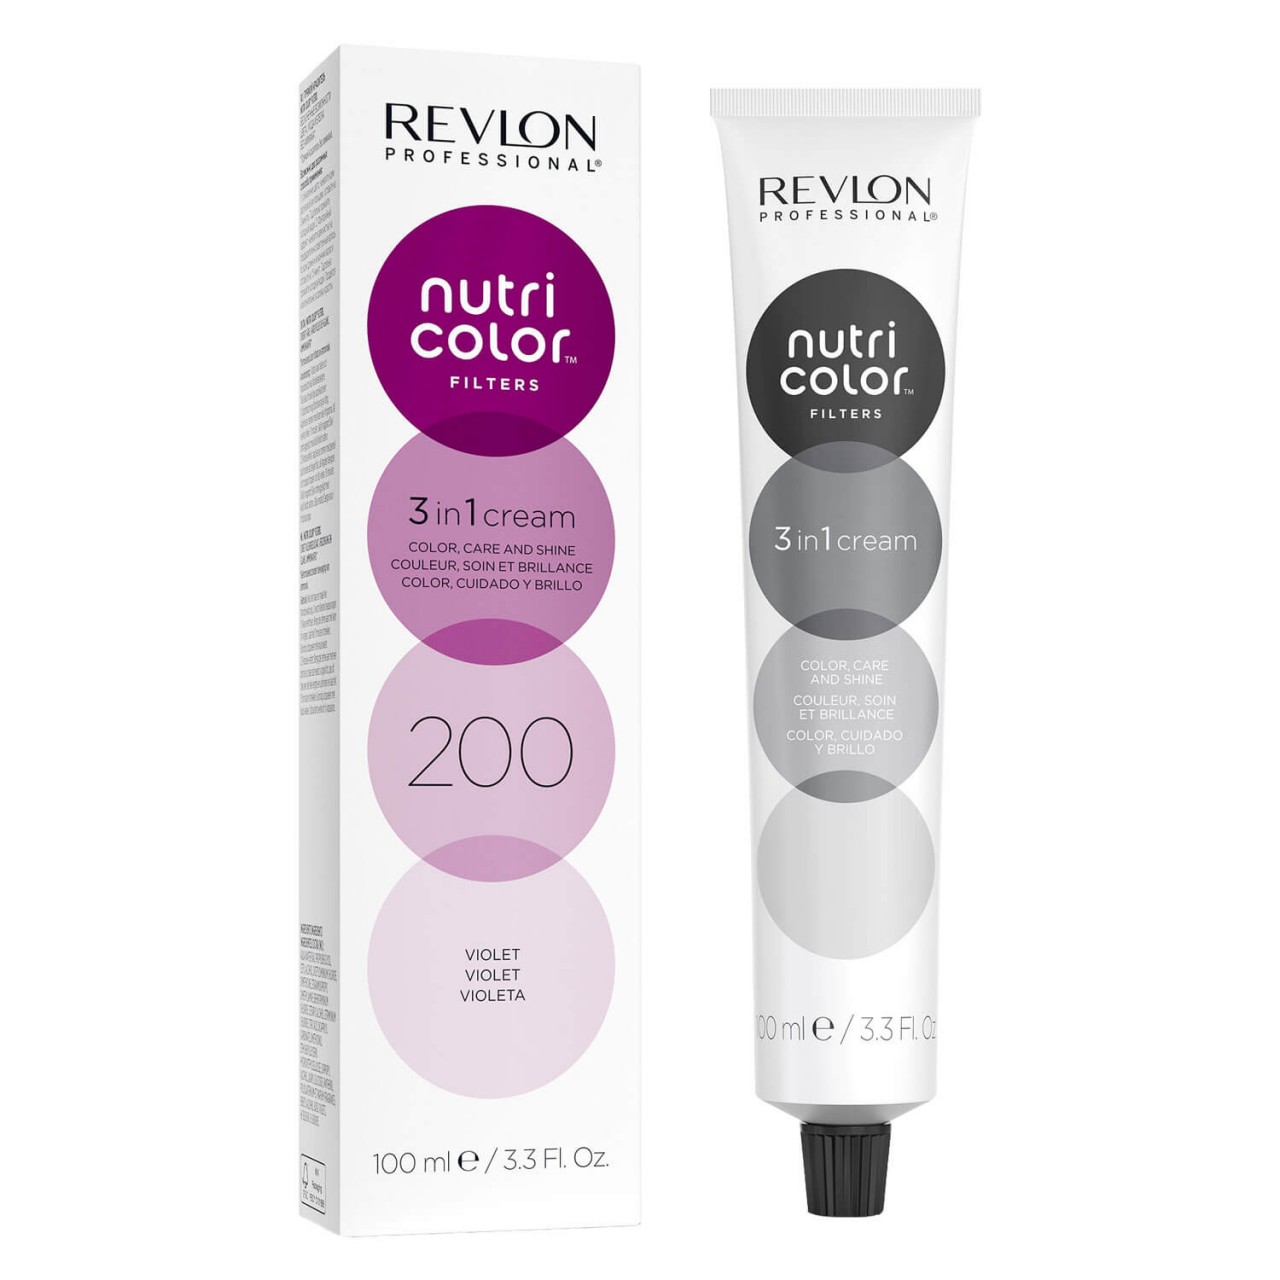 Nutri Color Creme - Violet 200 von Revlon Professional